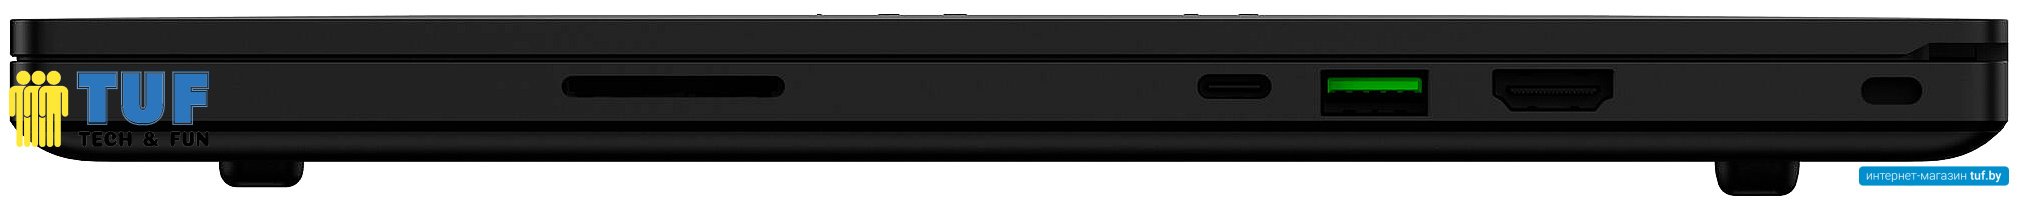 Игровой ноутбук Razer Blade 15 RZ09-0409BEA3-R3U1